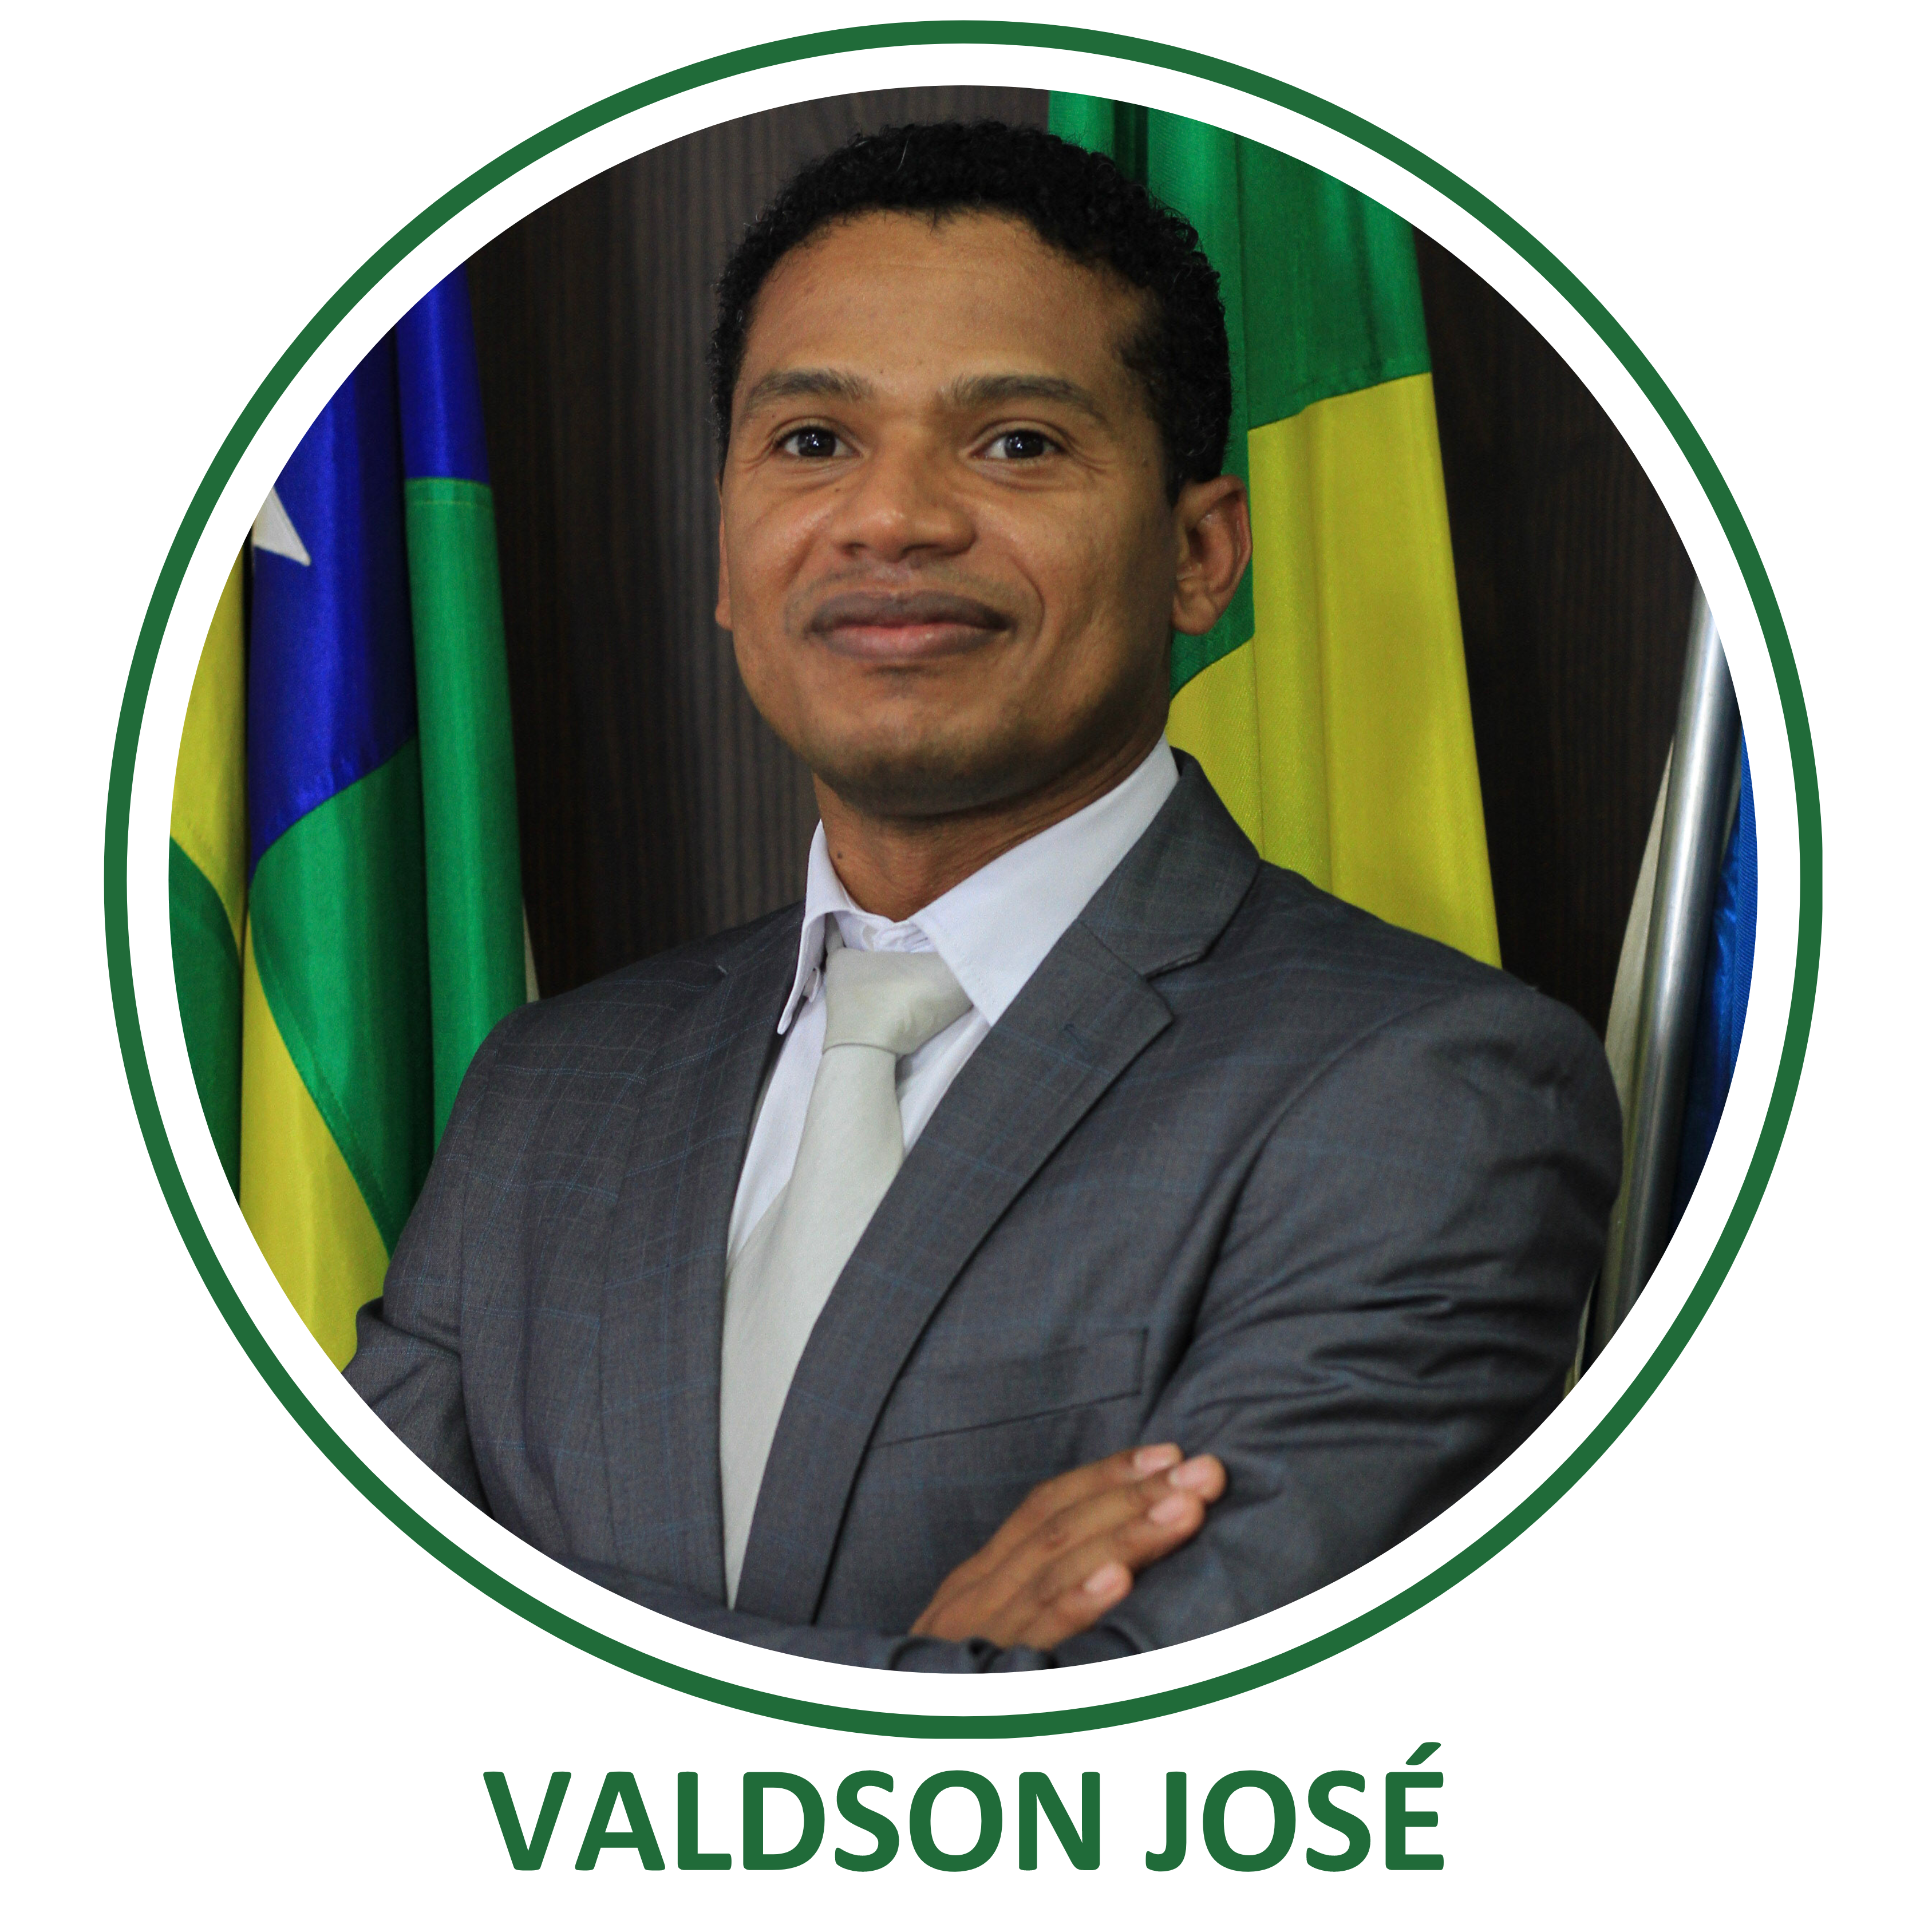 Valdson Jose da Silva – Valdson José